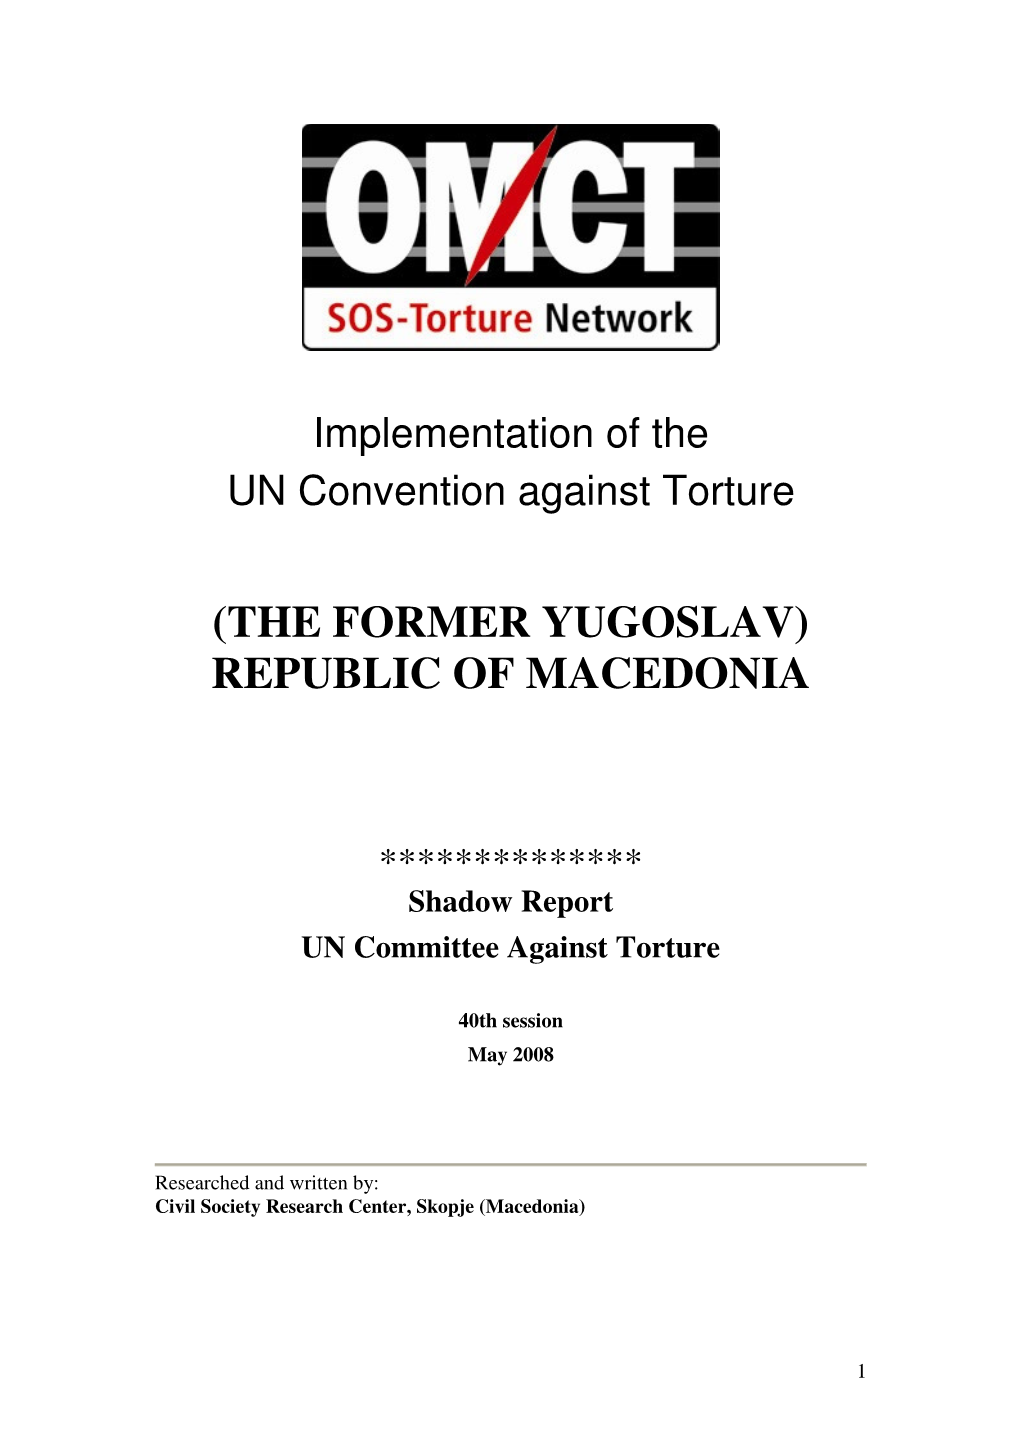 (The Former Yugoslav) Republic of Macedonia